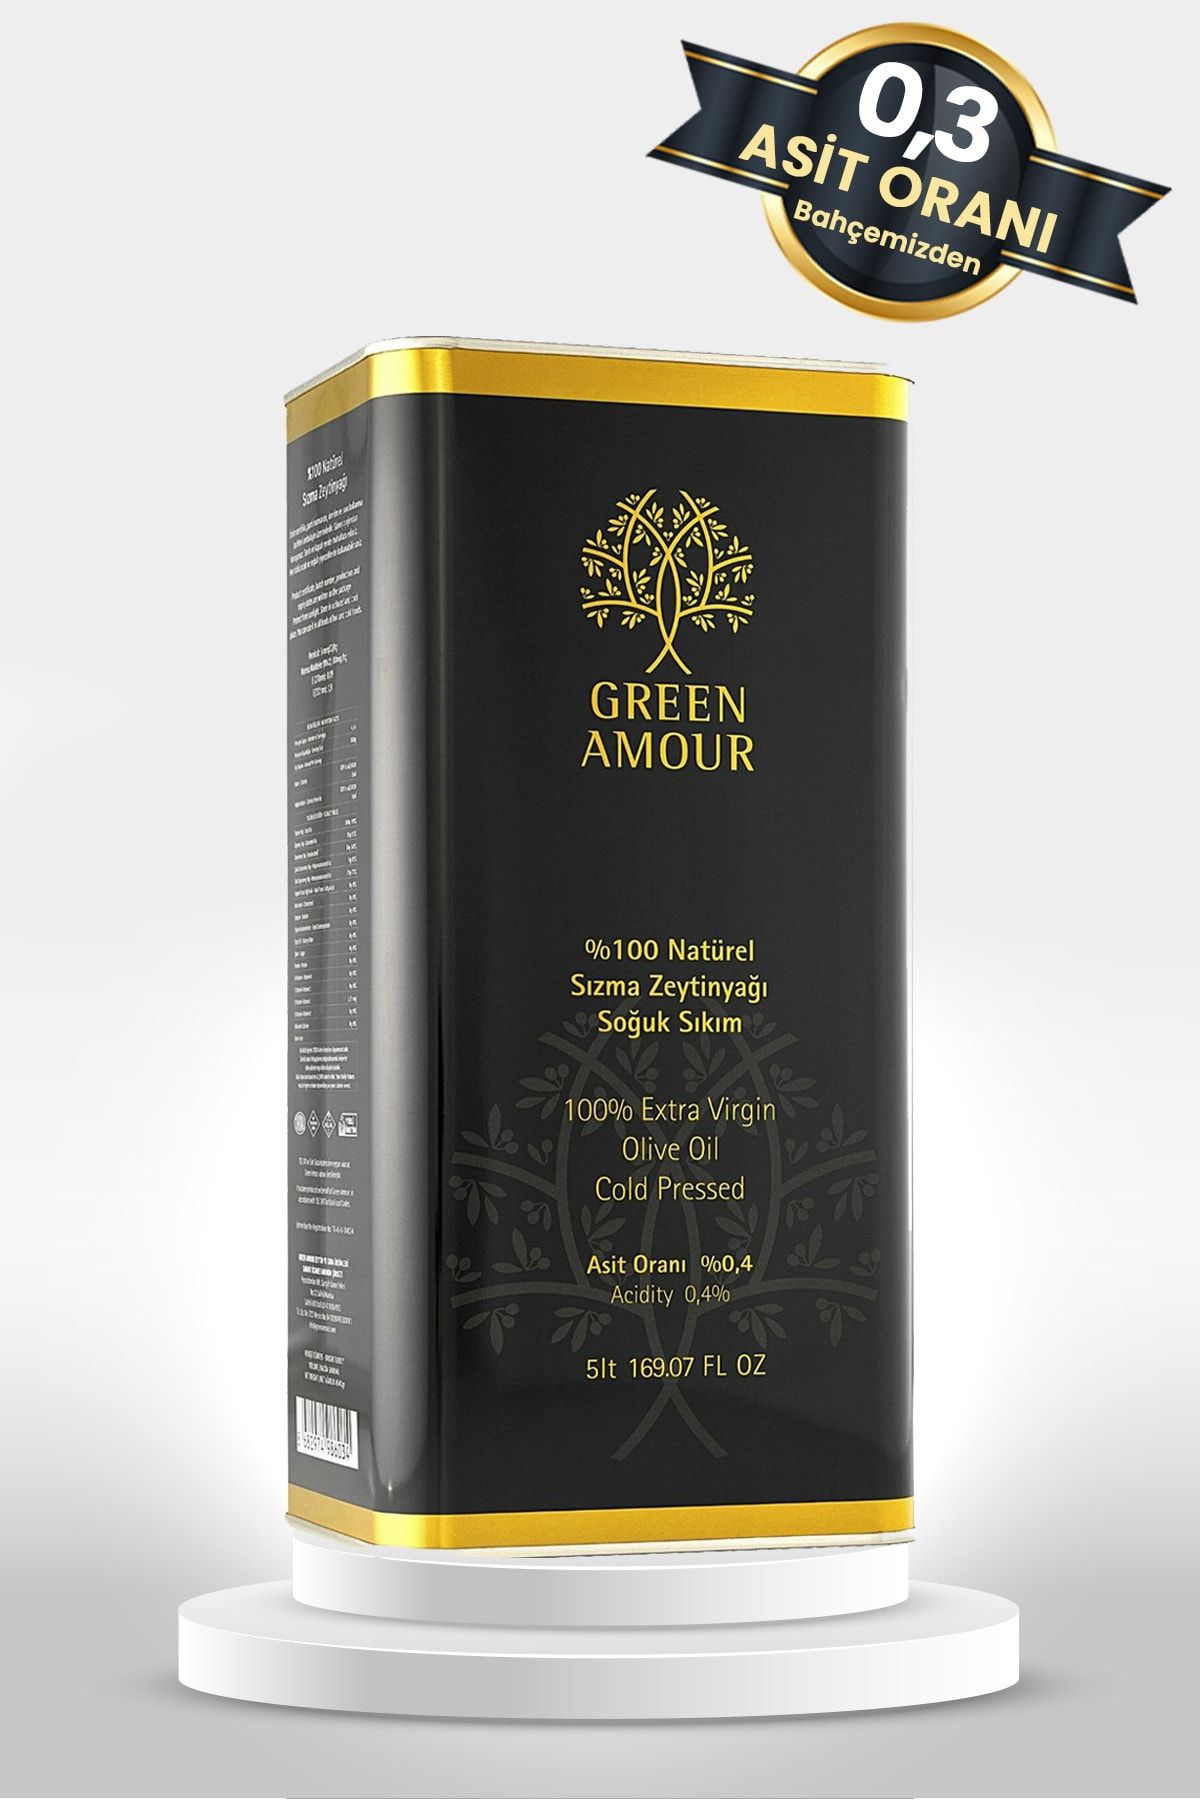 Green Amour Soğuk Sıkım %100 Natürel Sızma Zeytinyağı Düşük Asit -5 Litre